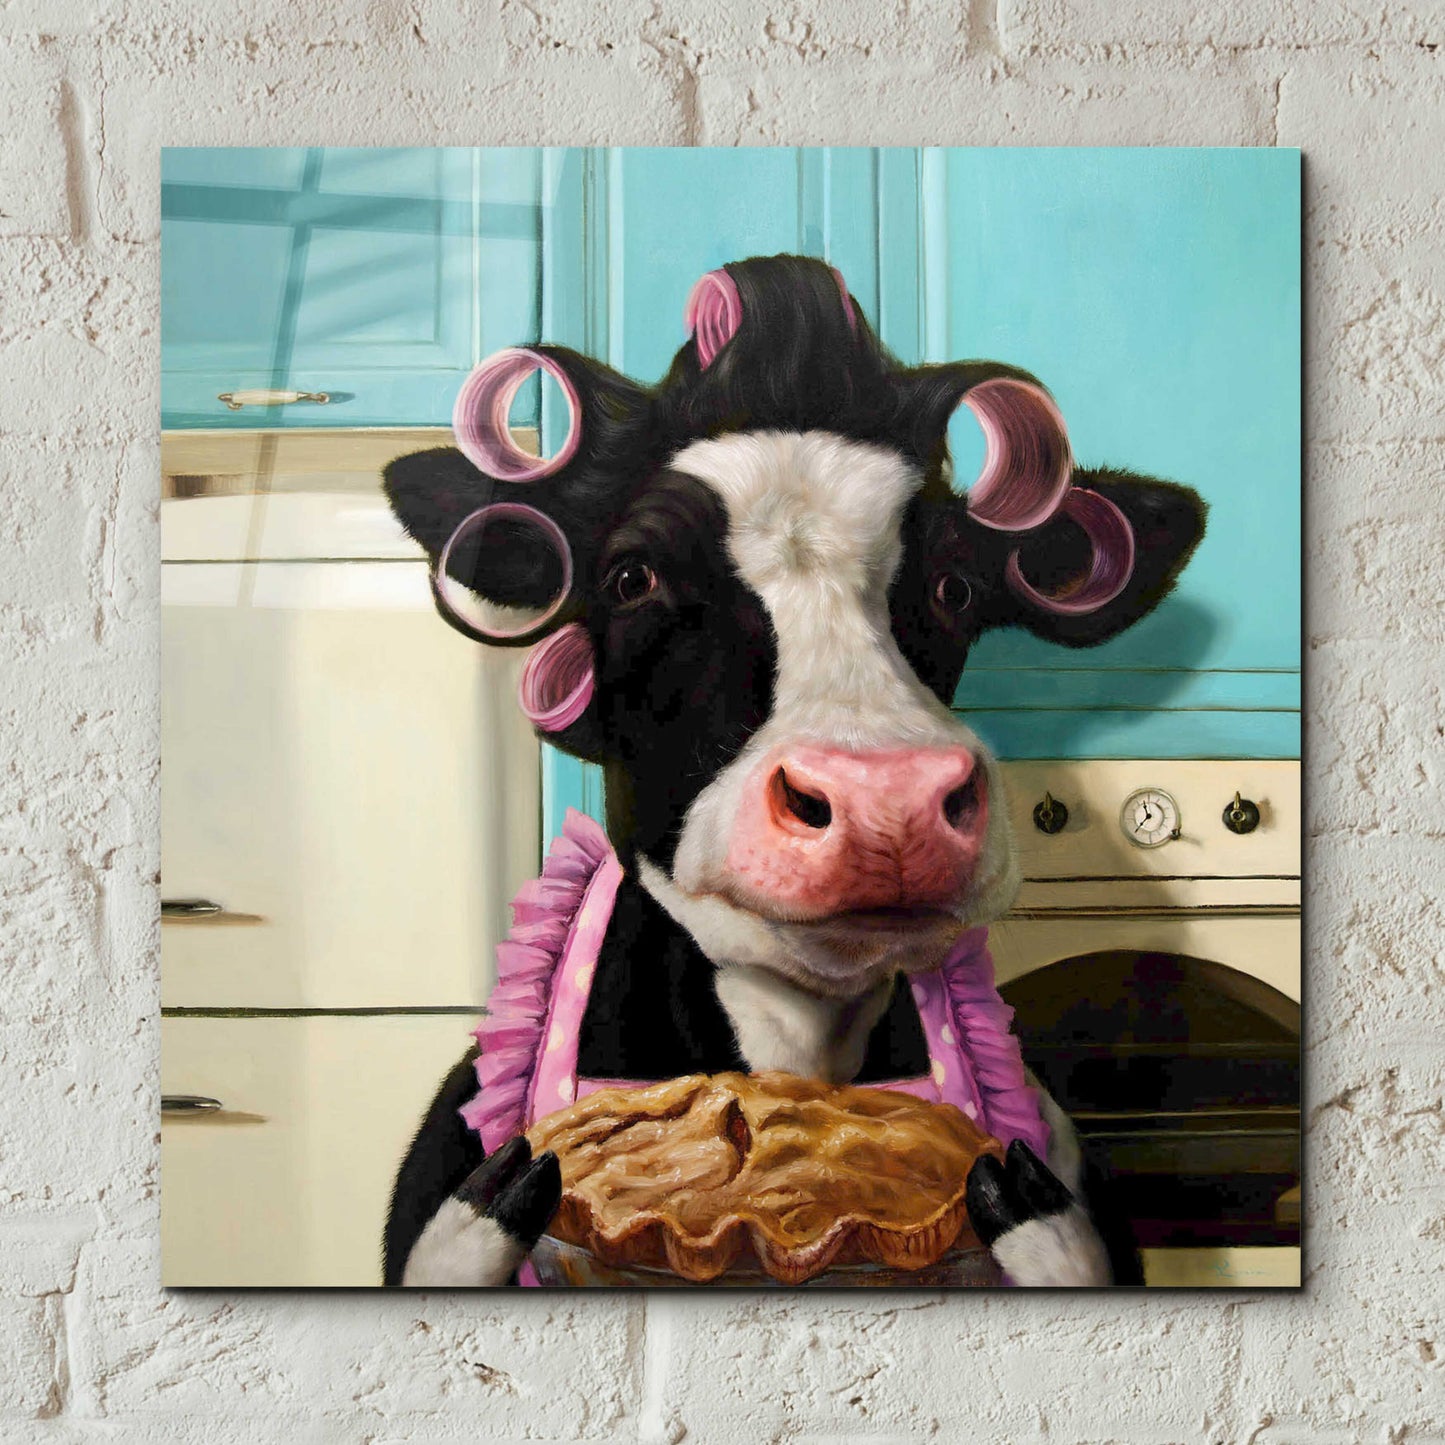 Epic Art 'Cow Pie' by Lucia Heffernan,12x12